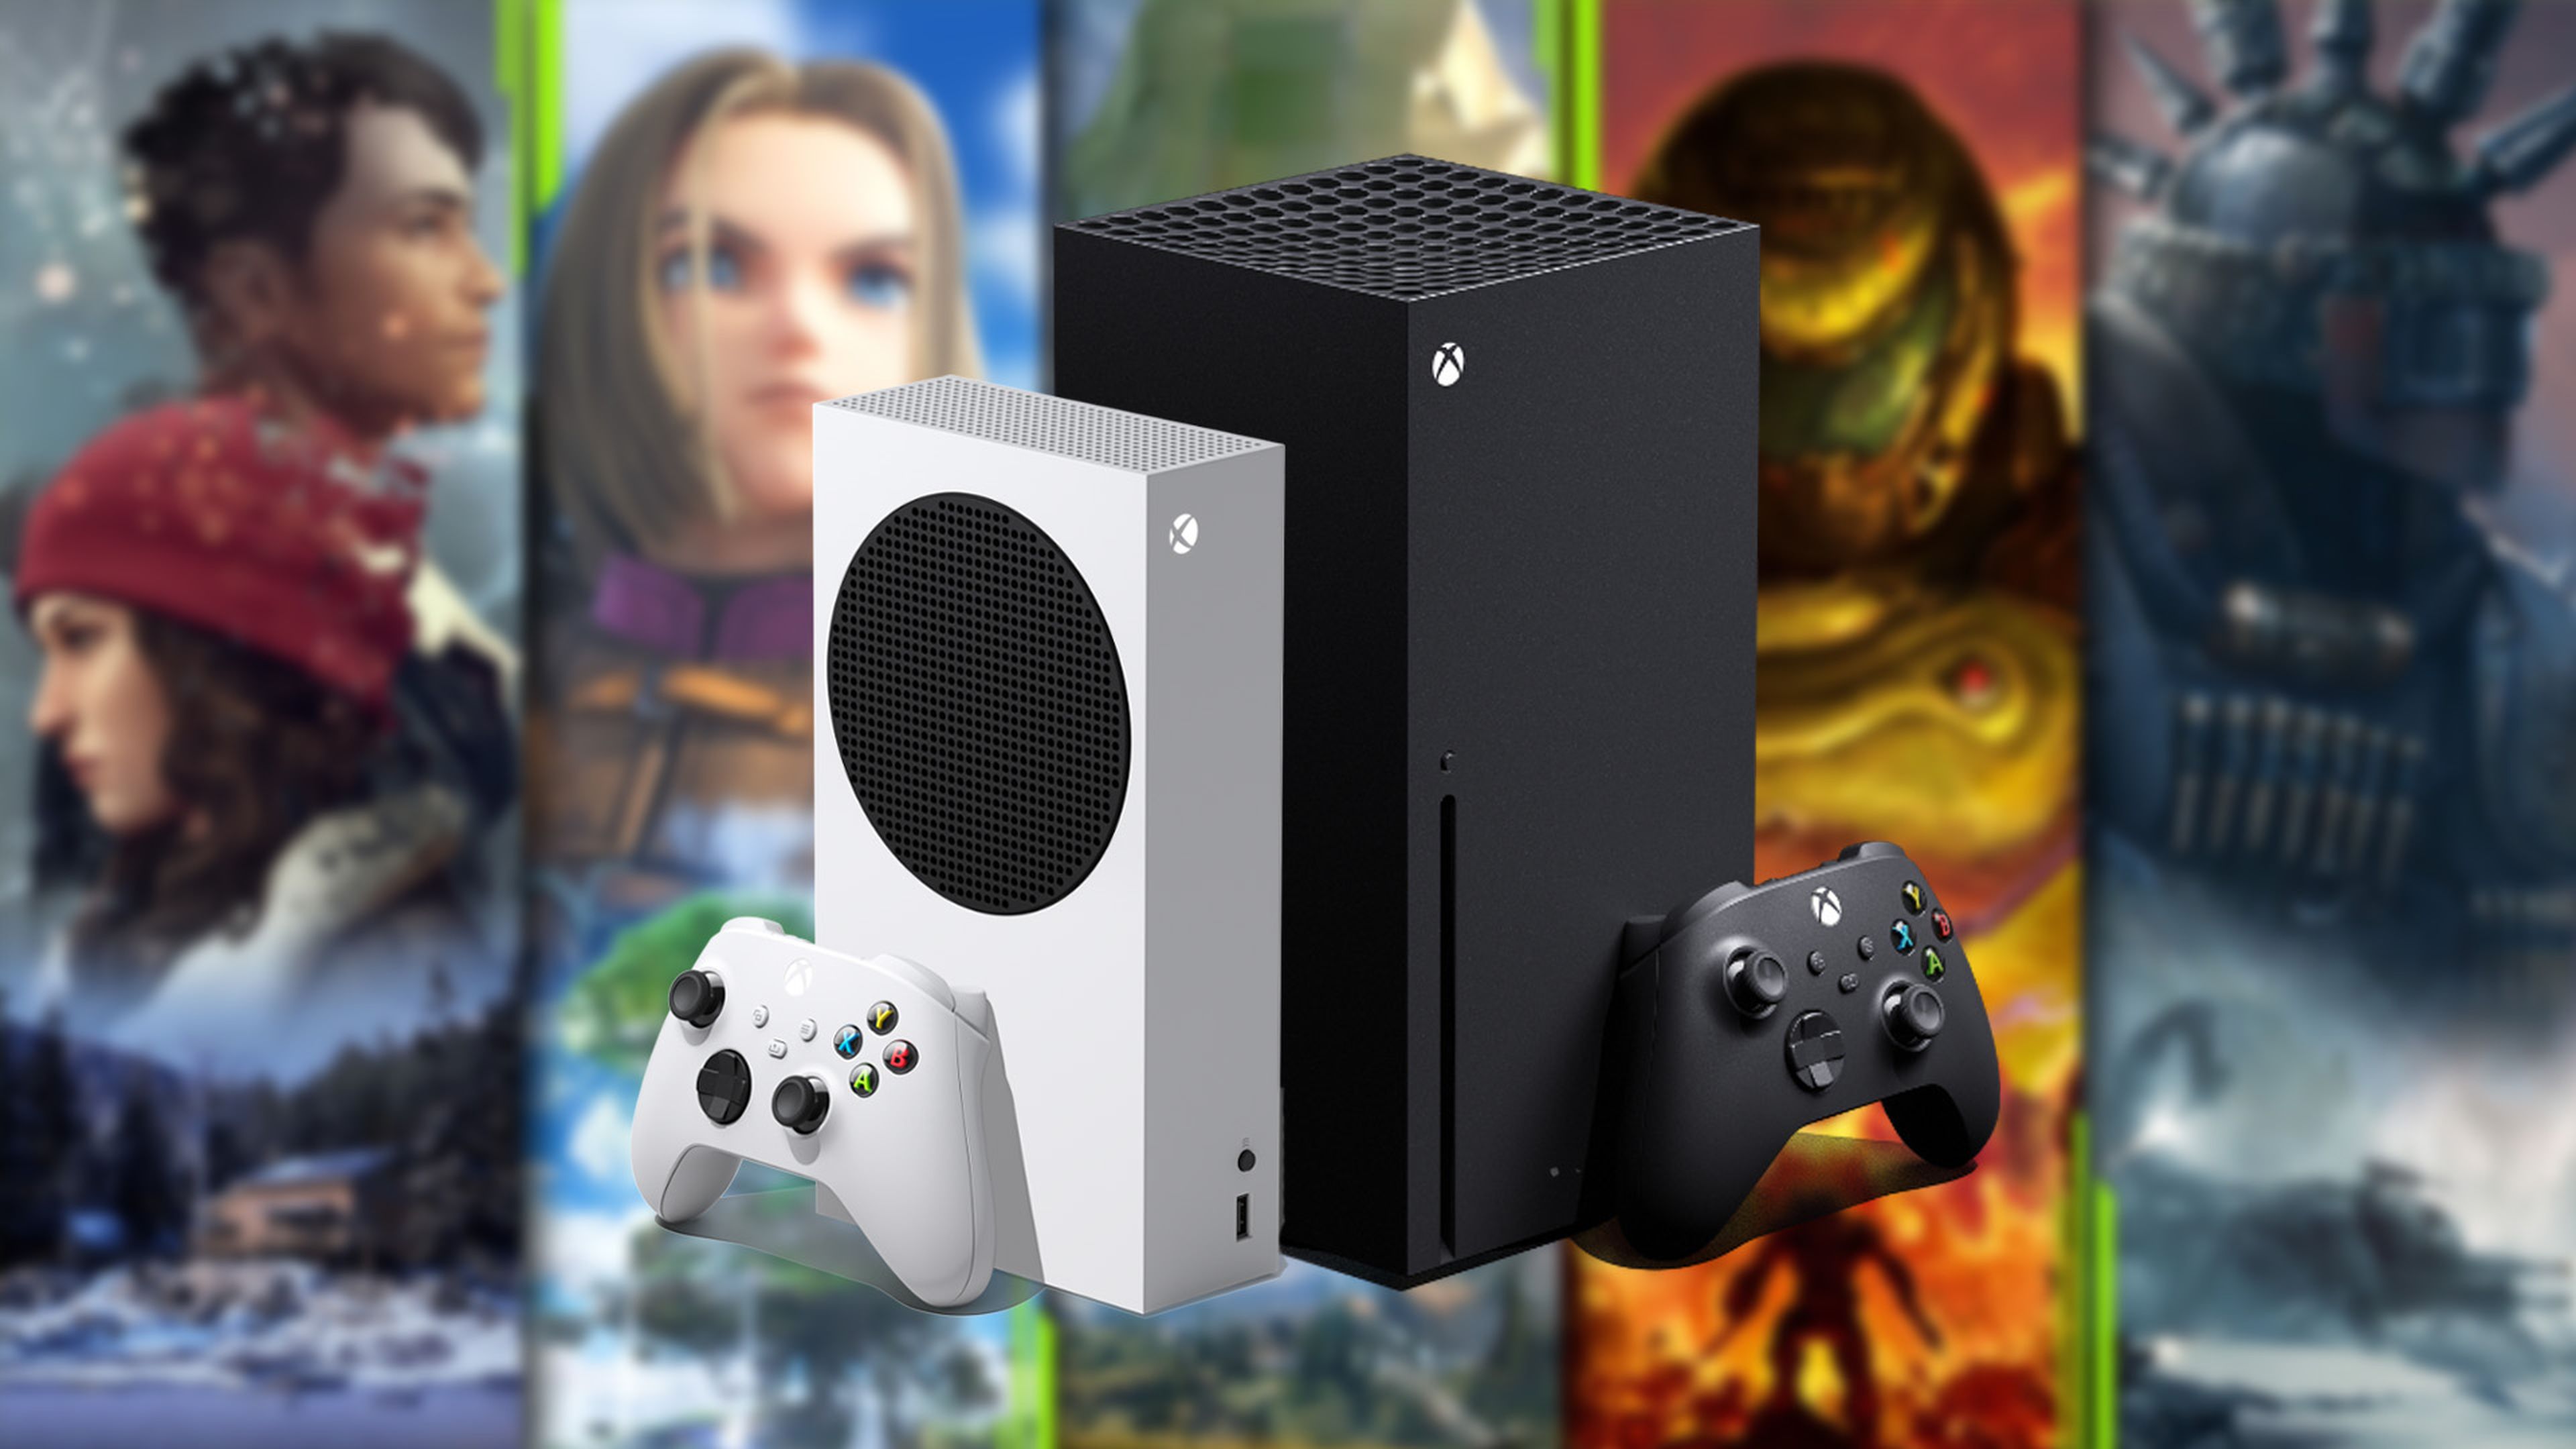 sopa Extracción En detalle Xbox Series X|S a fondo: características, juegos, precio y cómo comprarlas  en España | Hobby Consolas